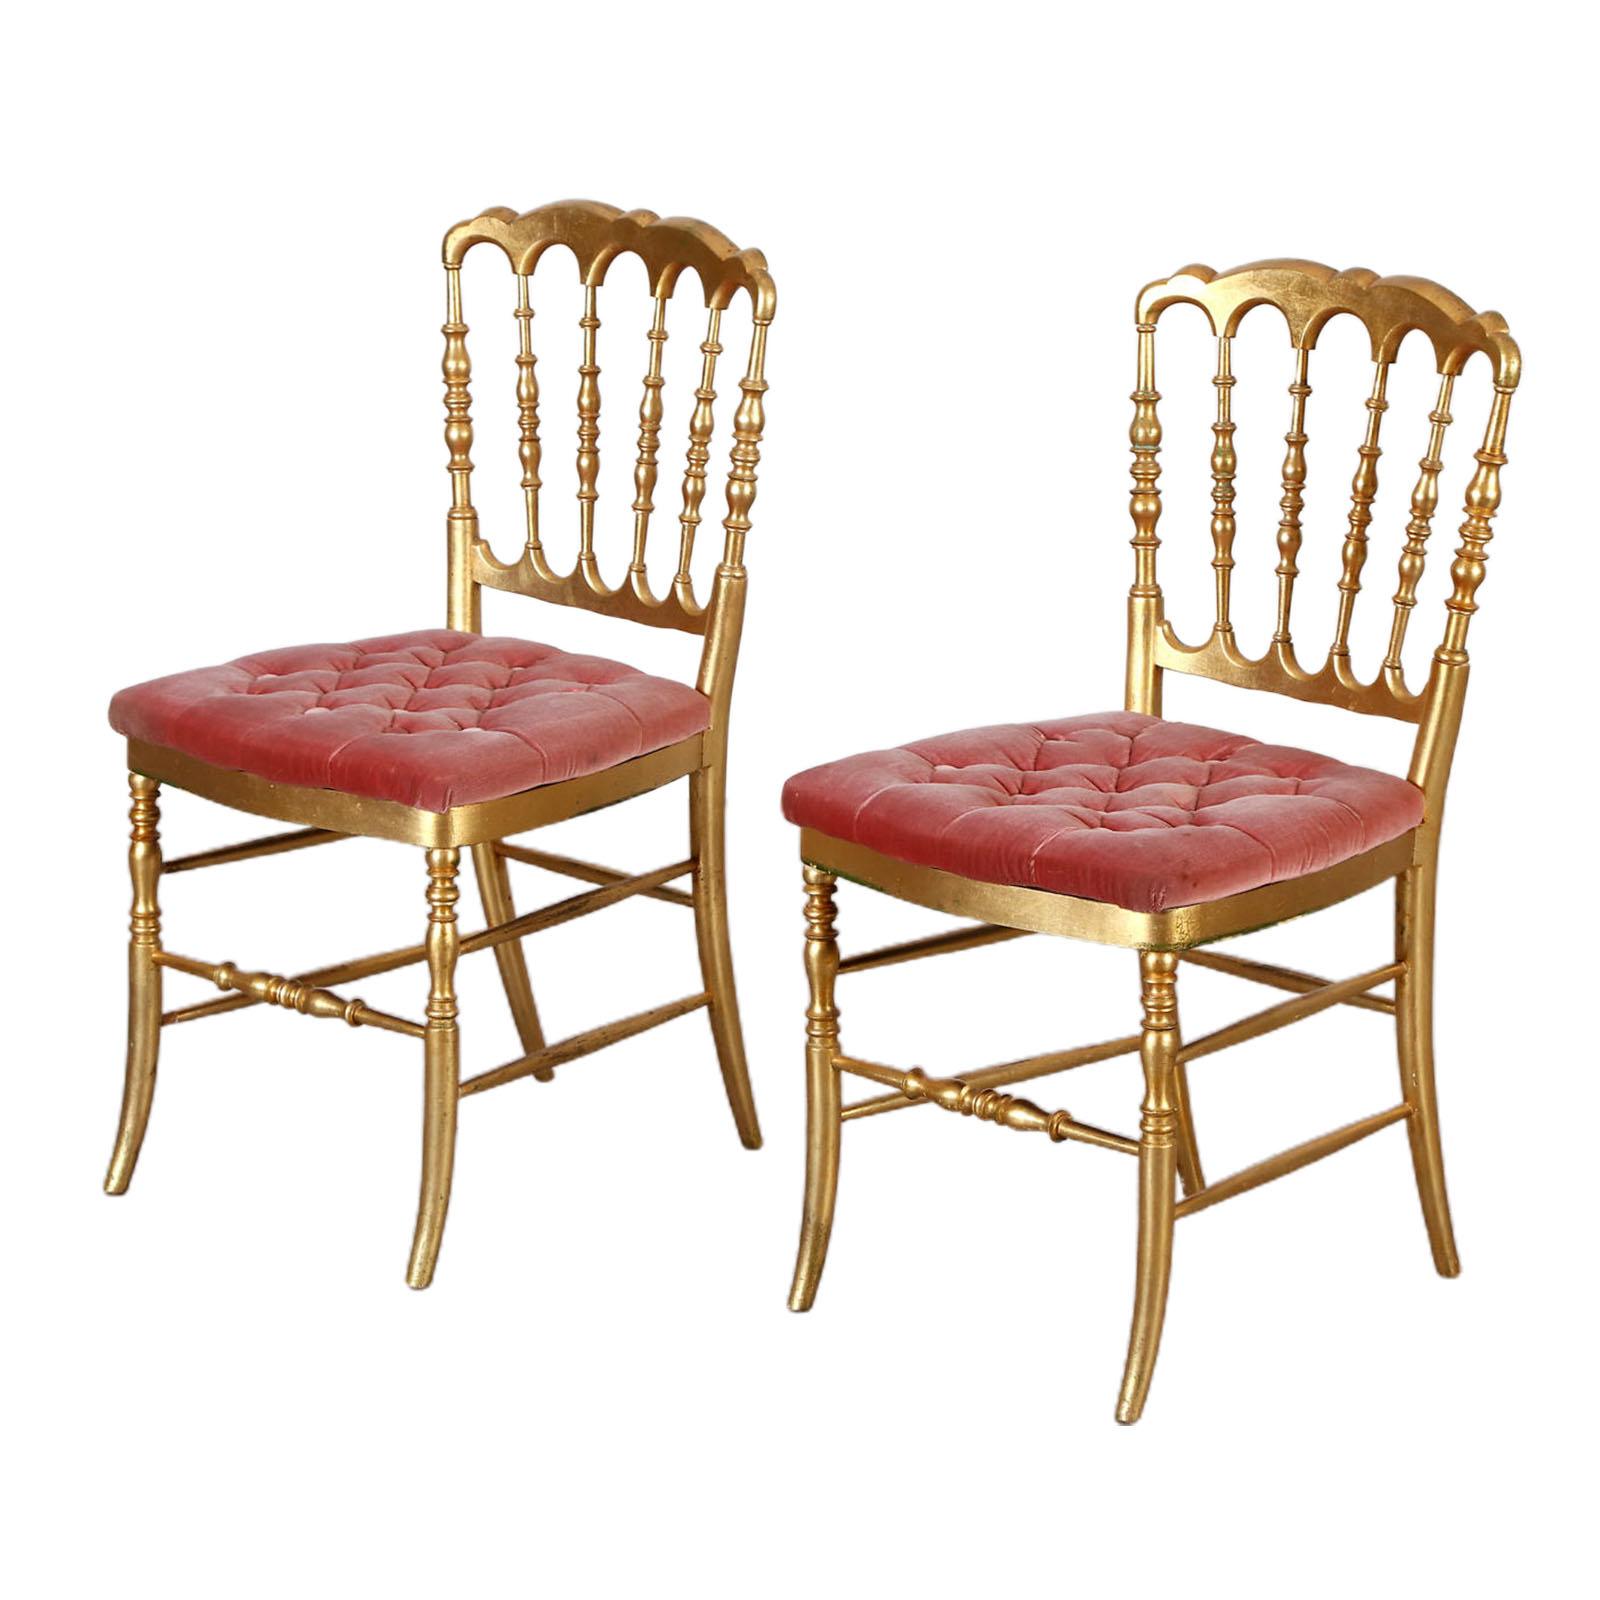 Nice Pair of 19th Century Gilt Wood Chiavari Chairs